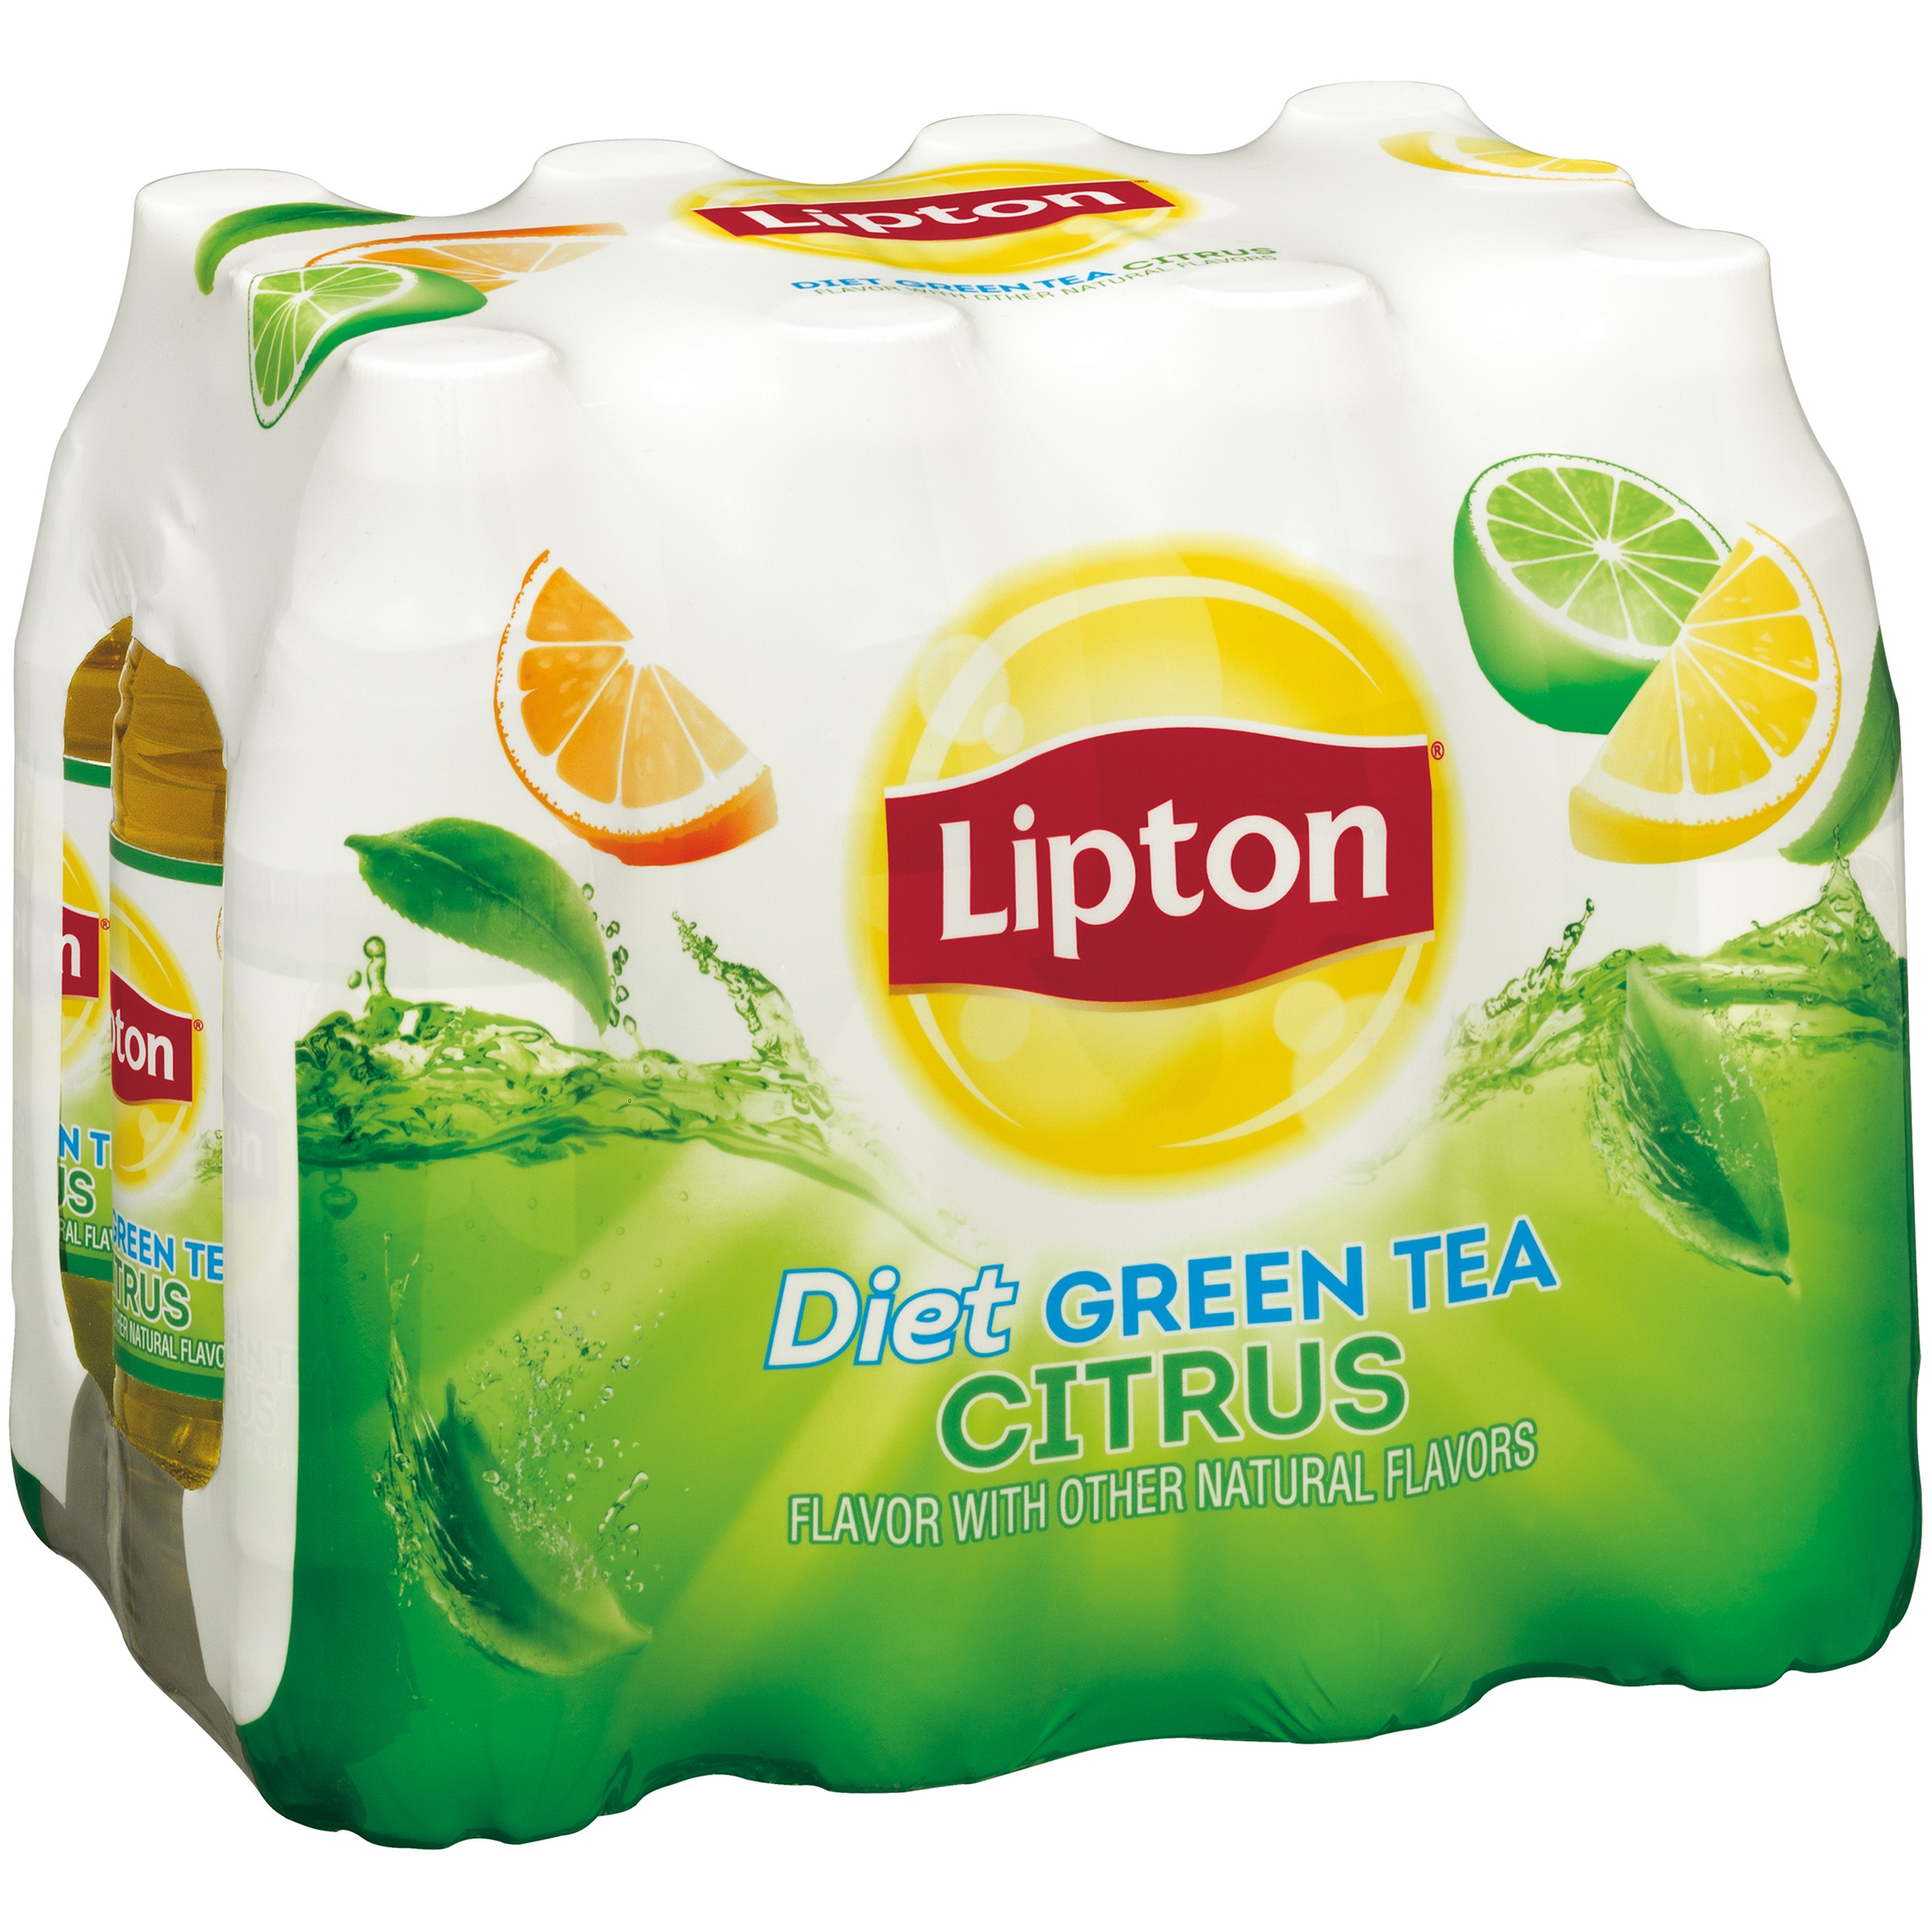 Lipton Diet Green Tea Citrus Iced Tea, Bottled Tea Drink, 16.9 fl oz, 12 Pack Bottles - image 5 of 5